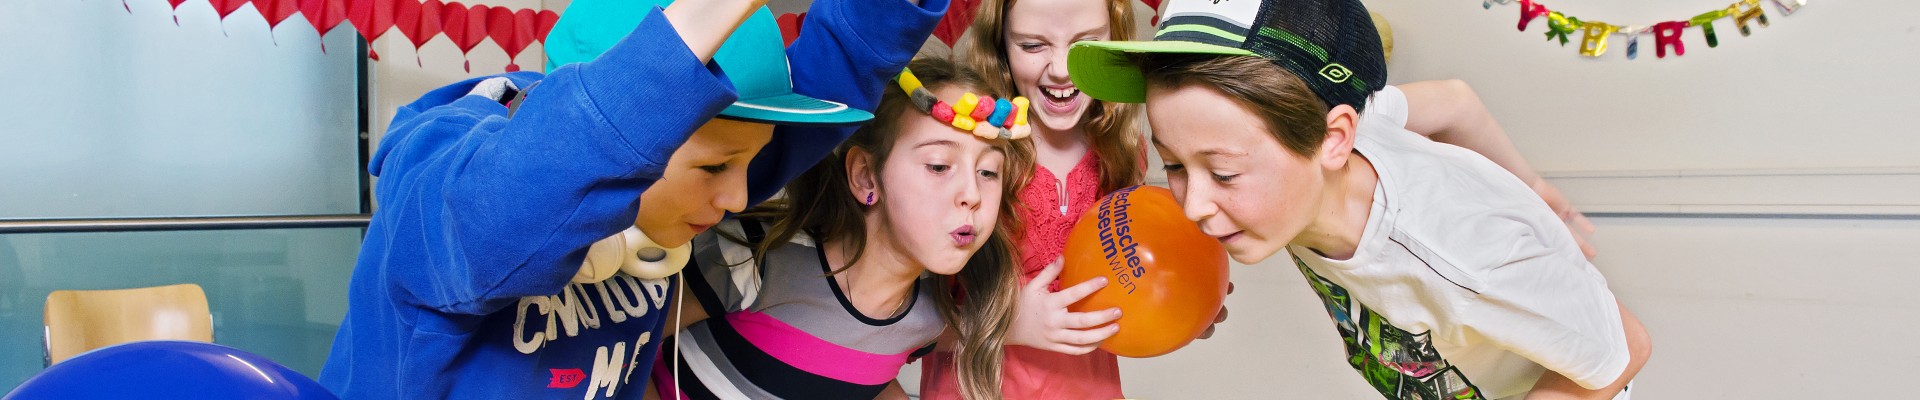 : Kinder feiern Kindergeburtstagsparty im Partyraum mit viel Dekoration und Torte 